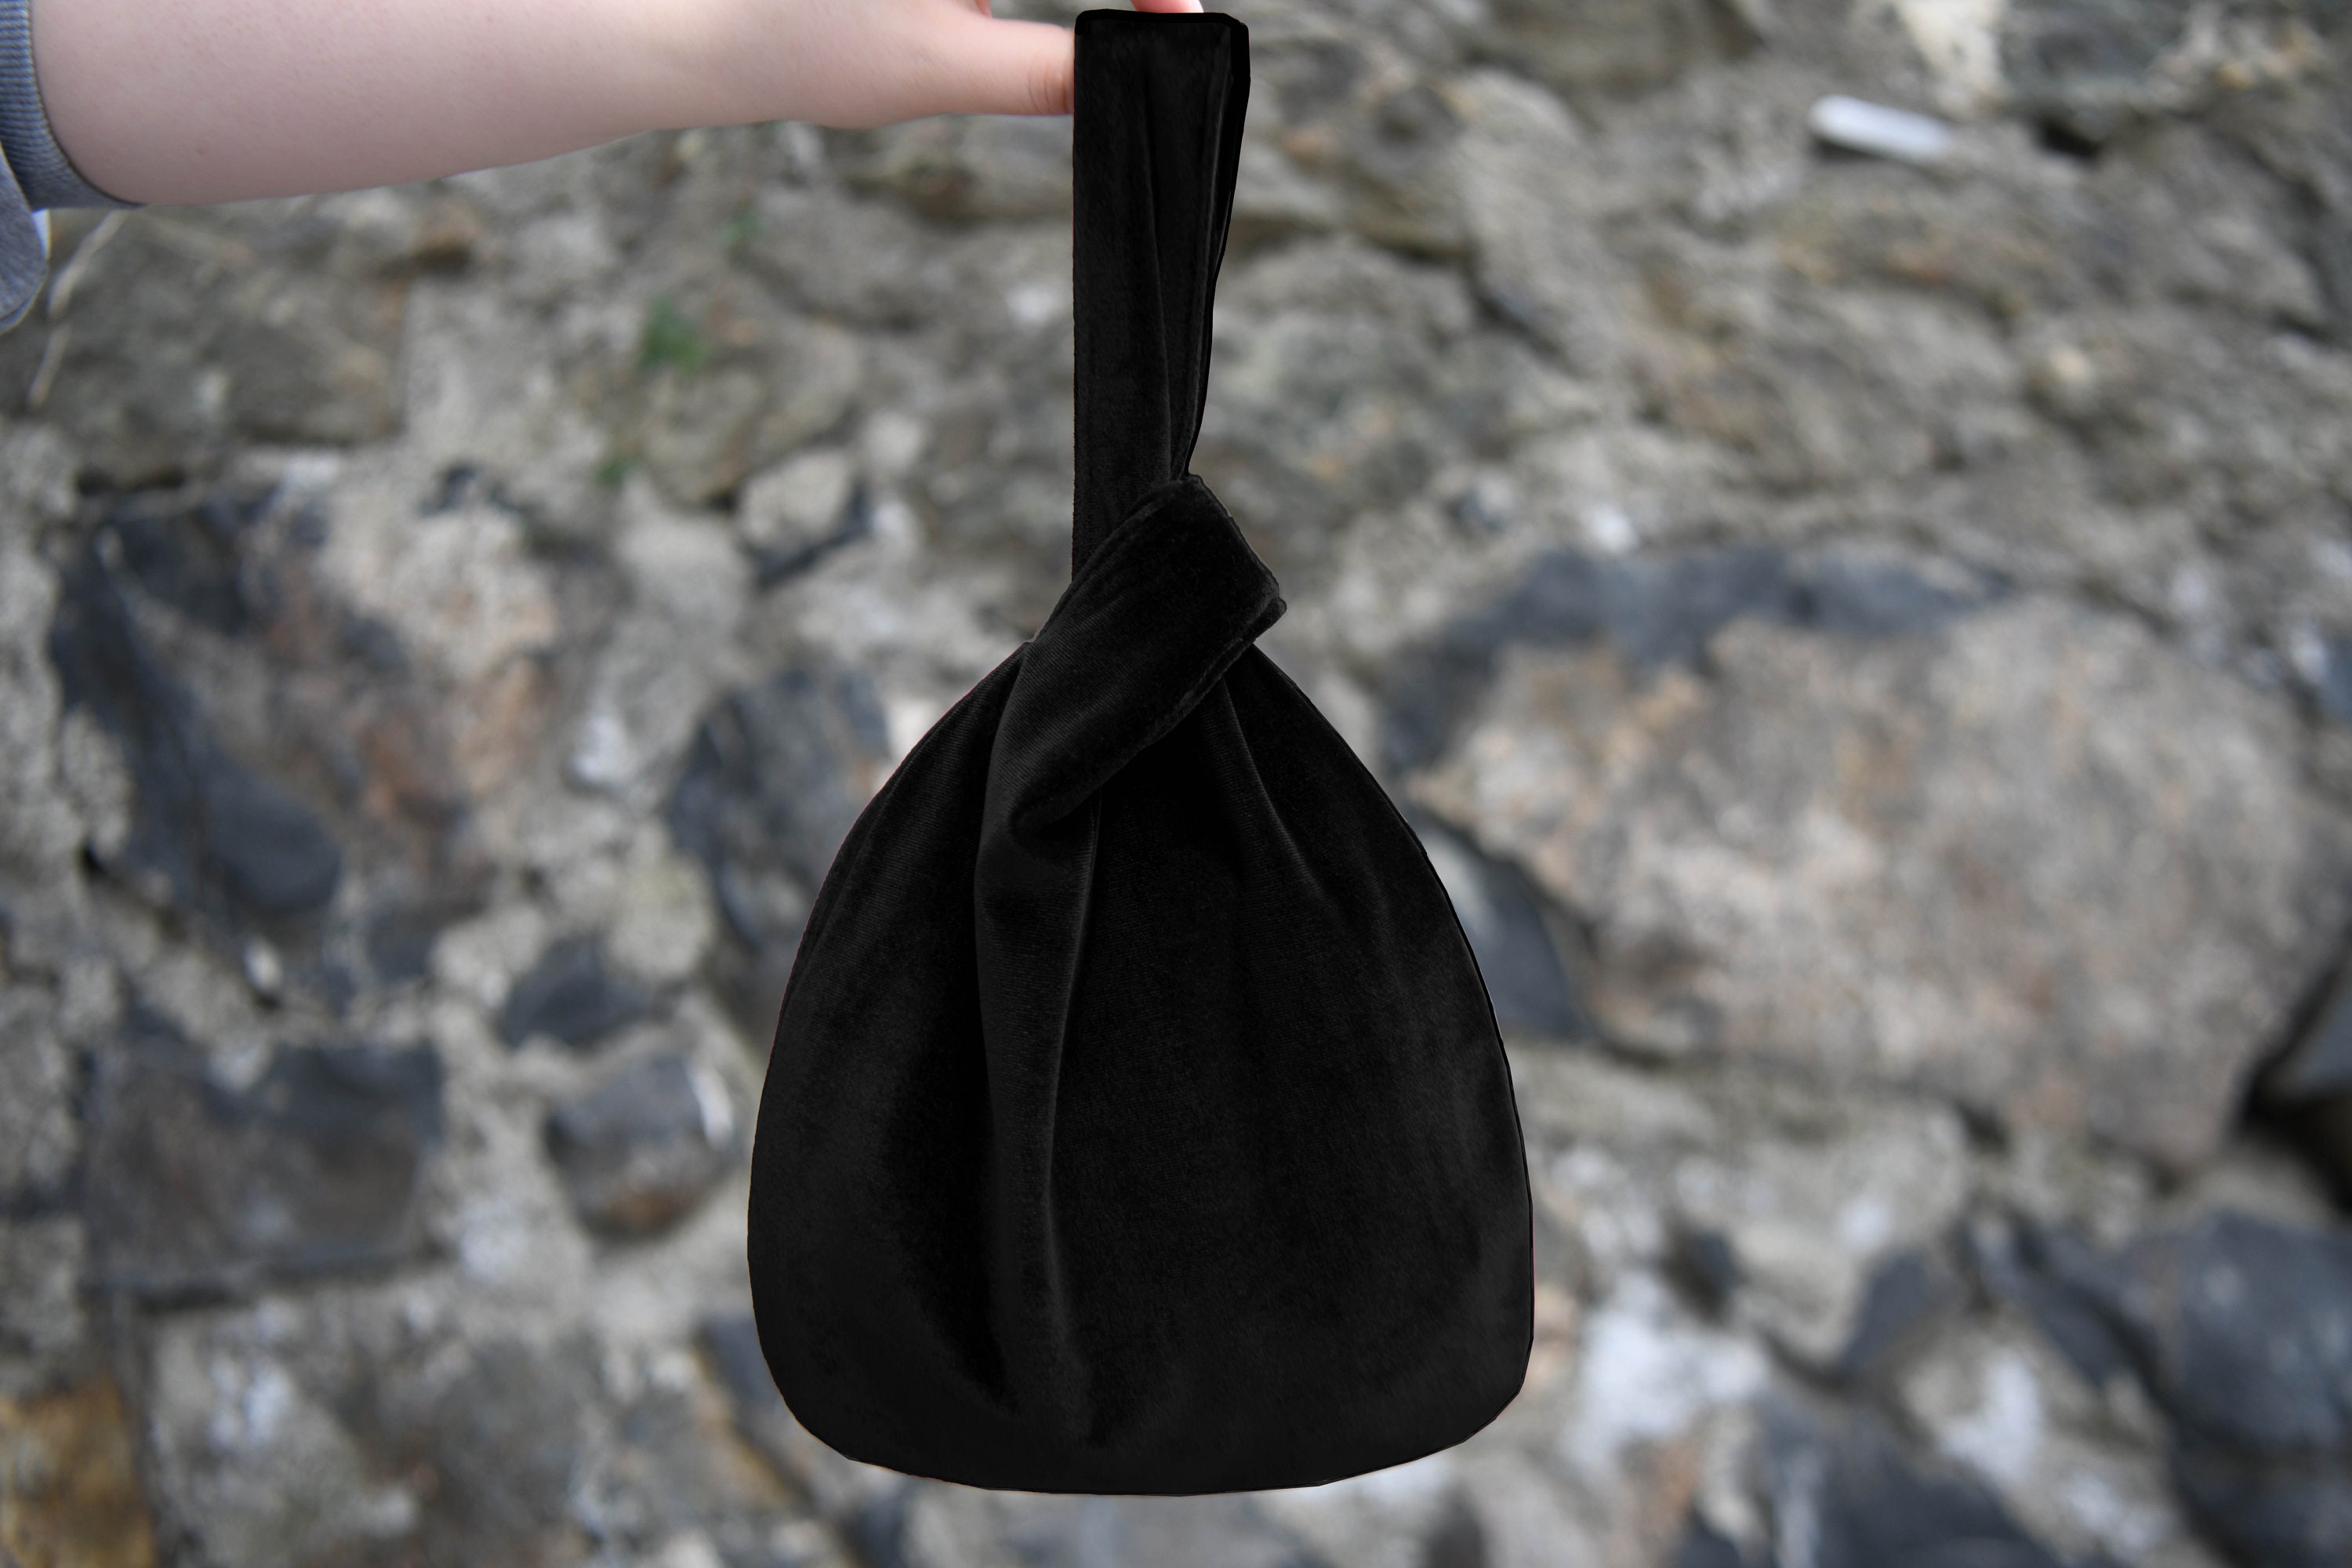 Velvet handbag Louis Feraud Black in Velvet - 23639292